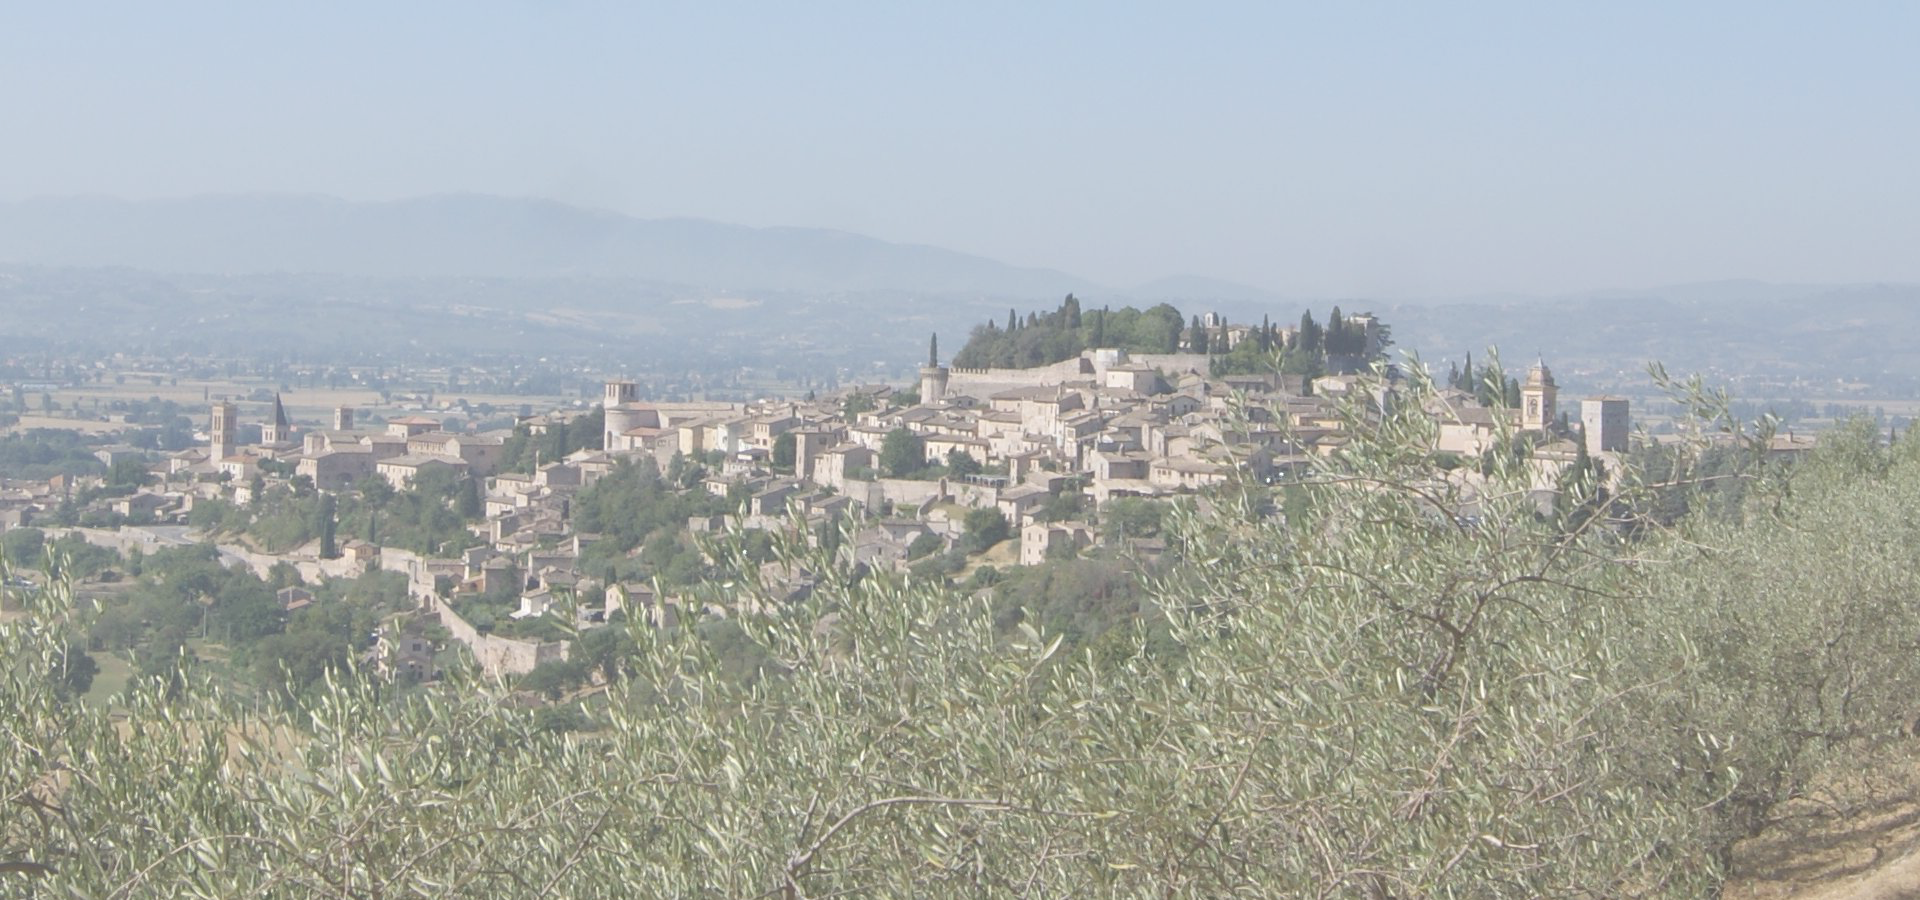 <b>Spello, Province of Perugia, Umbria Region, Italy</b>